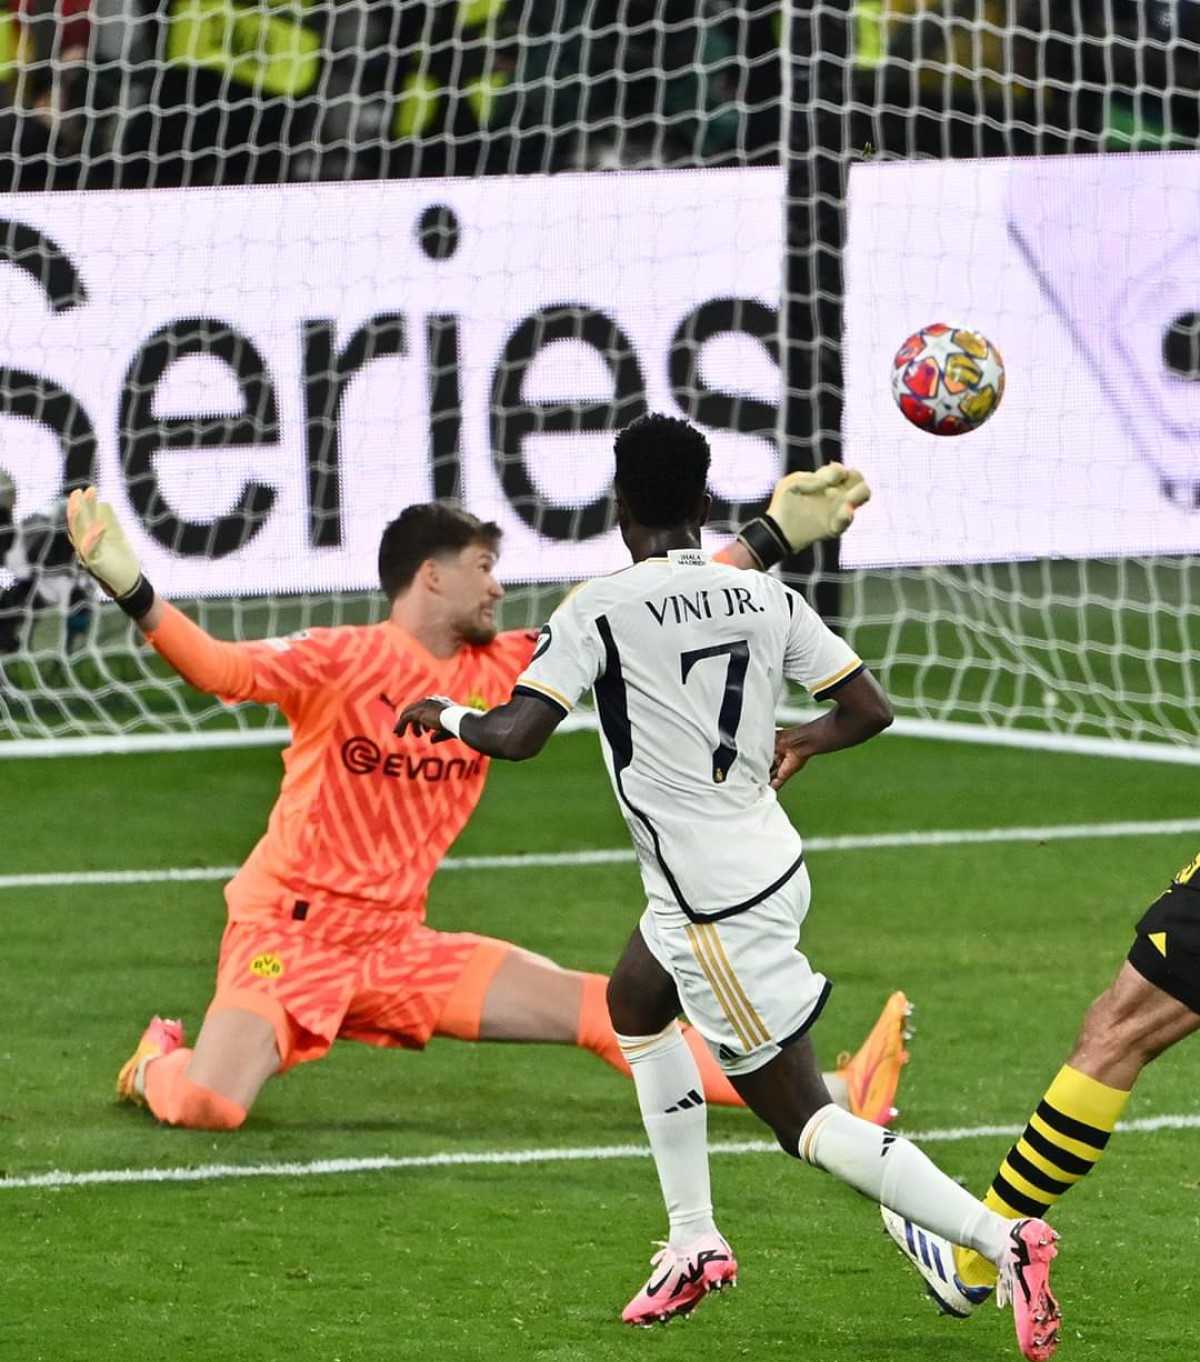 Vinicius Borussia Dortmund-Real Madrid (0-2): analisi tattica e considerazioni